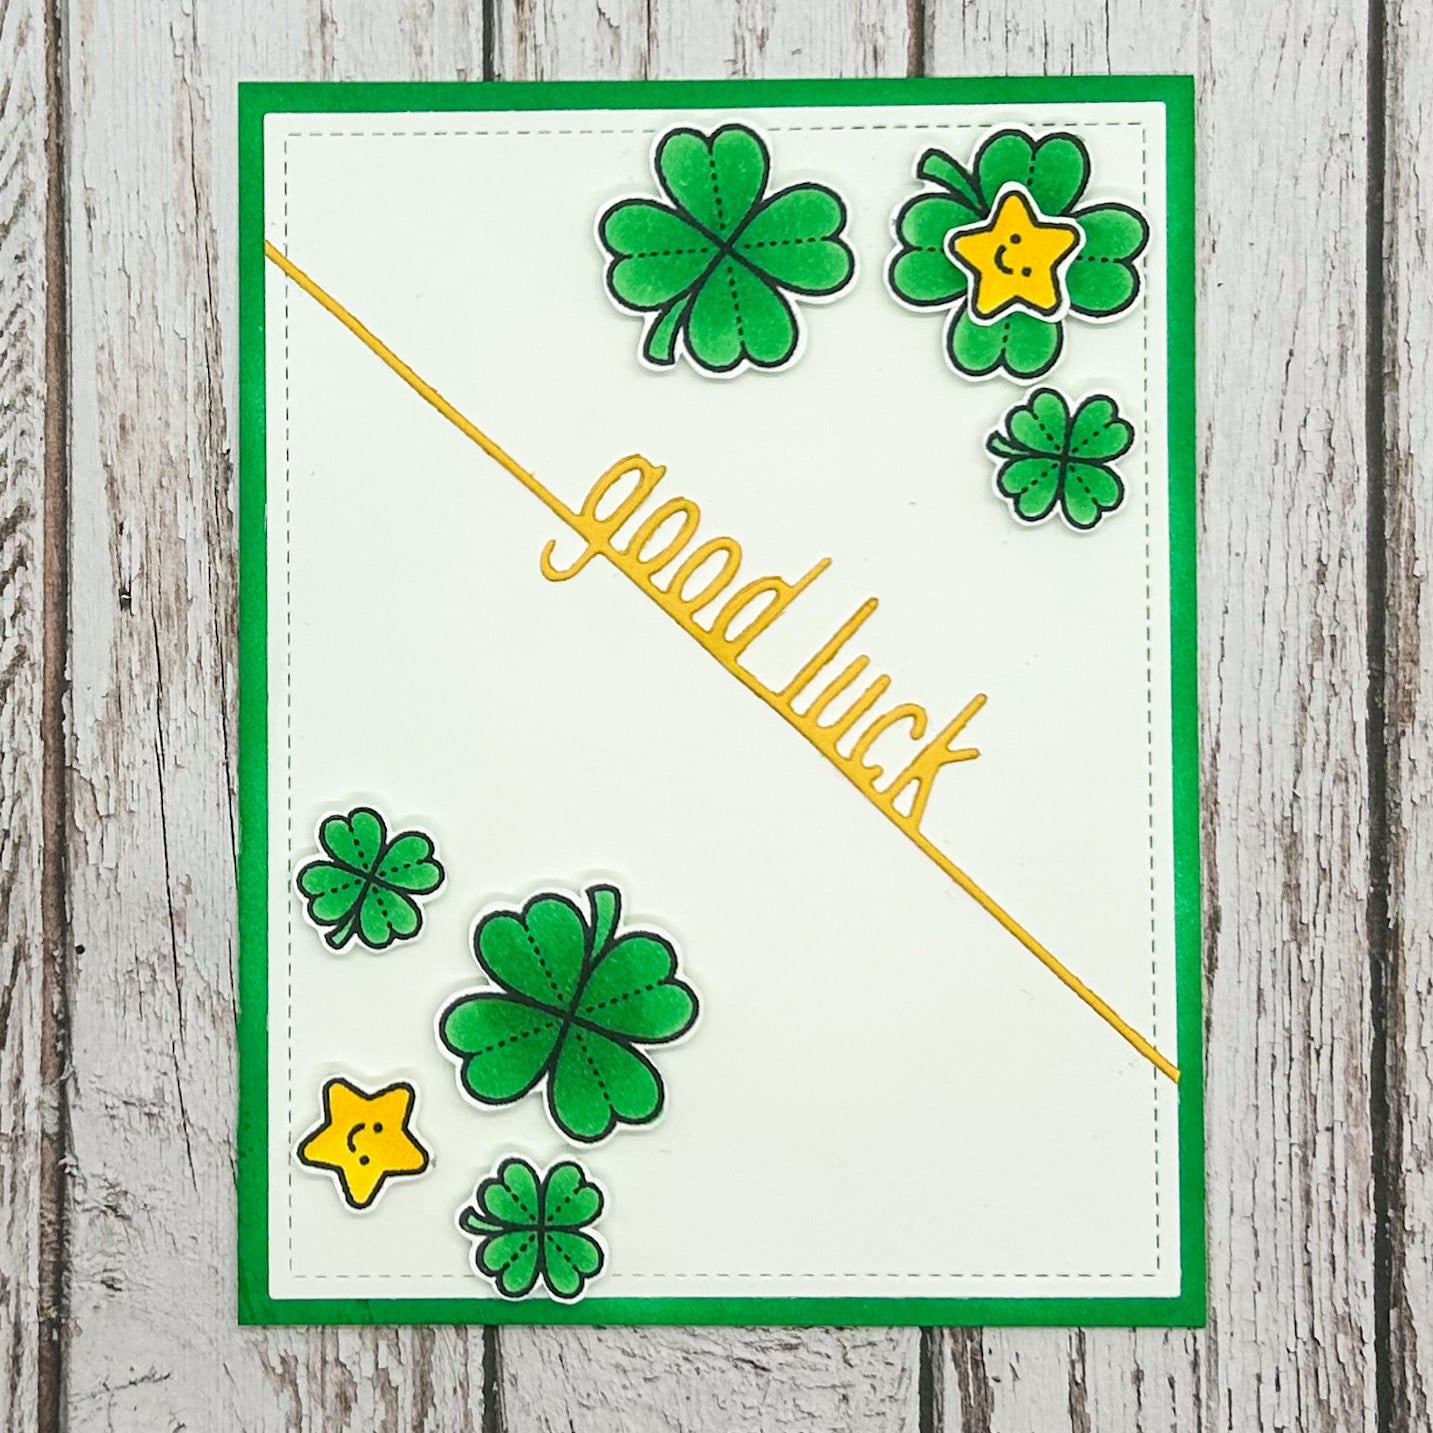 Four Leaf Clovers Handmade Good Luck Card